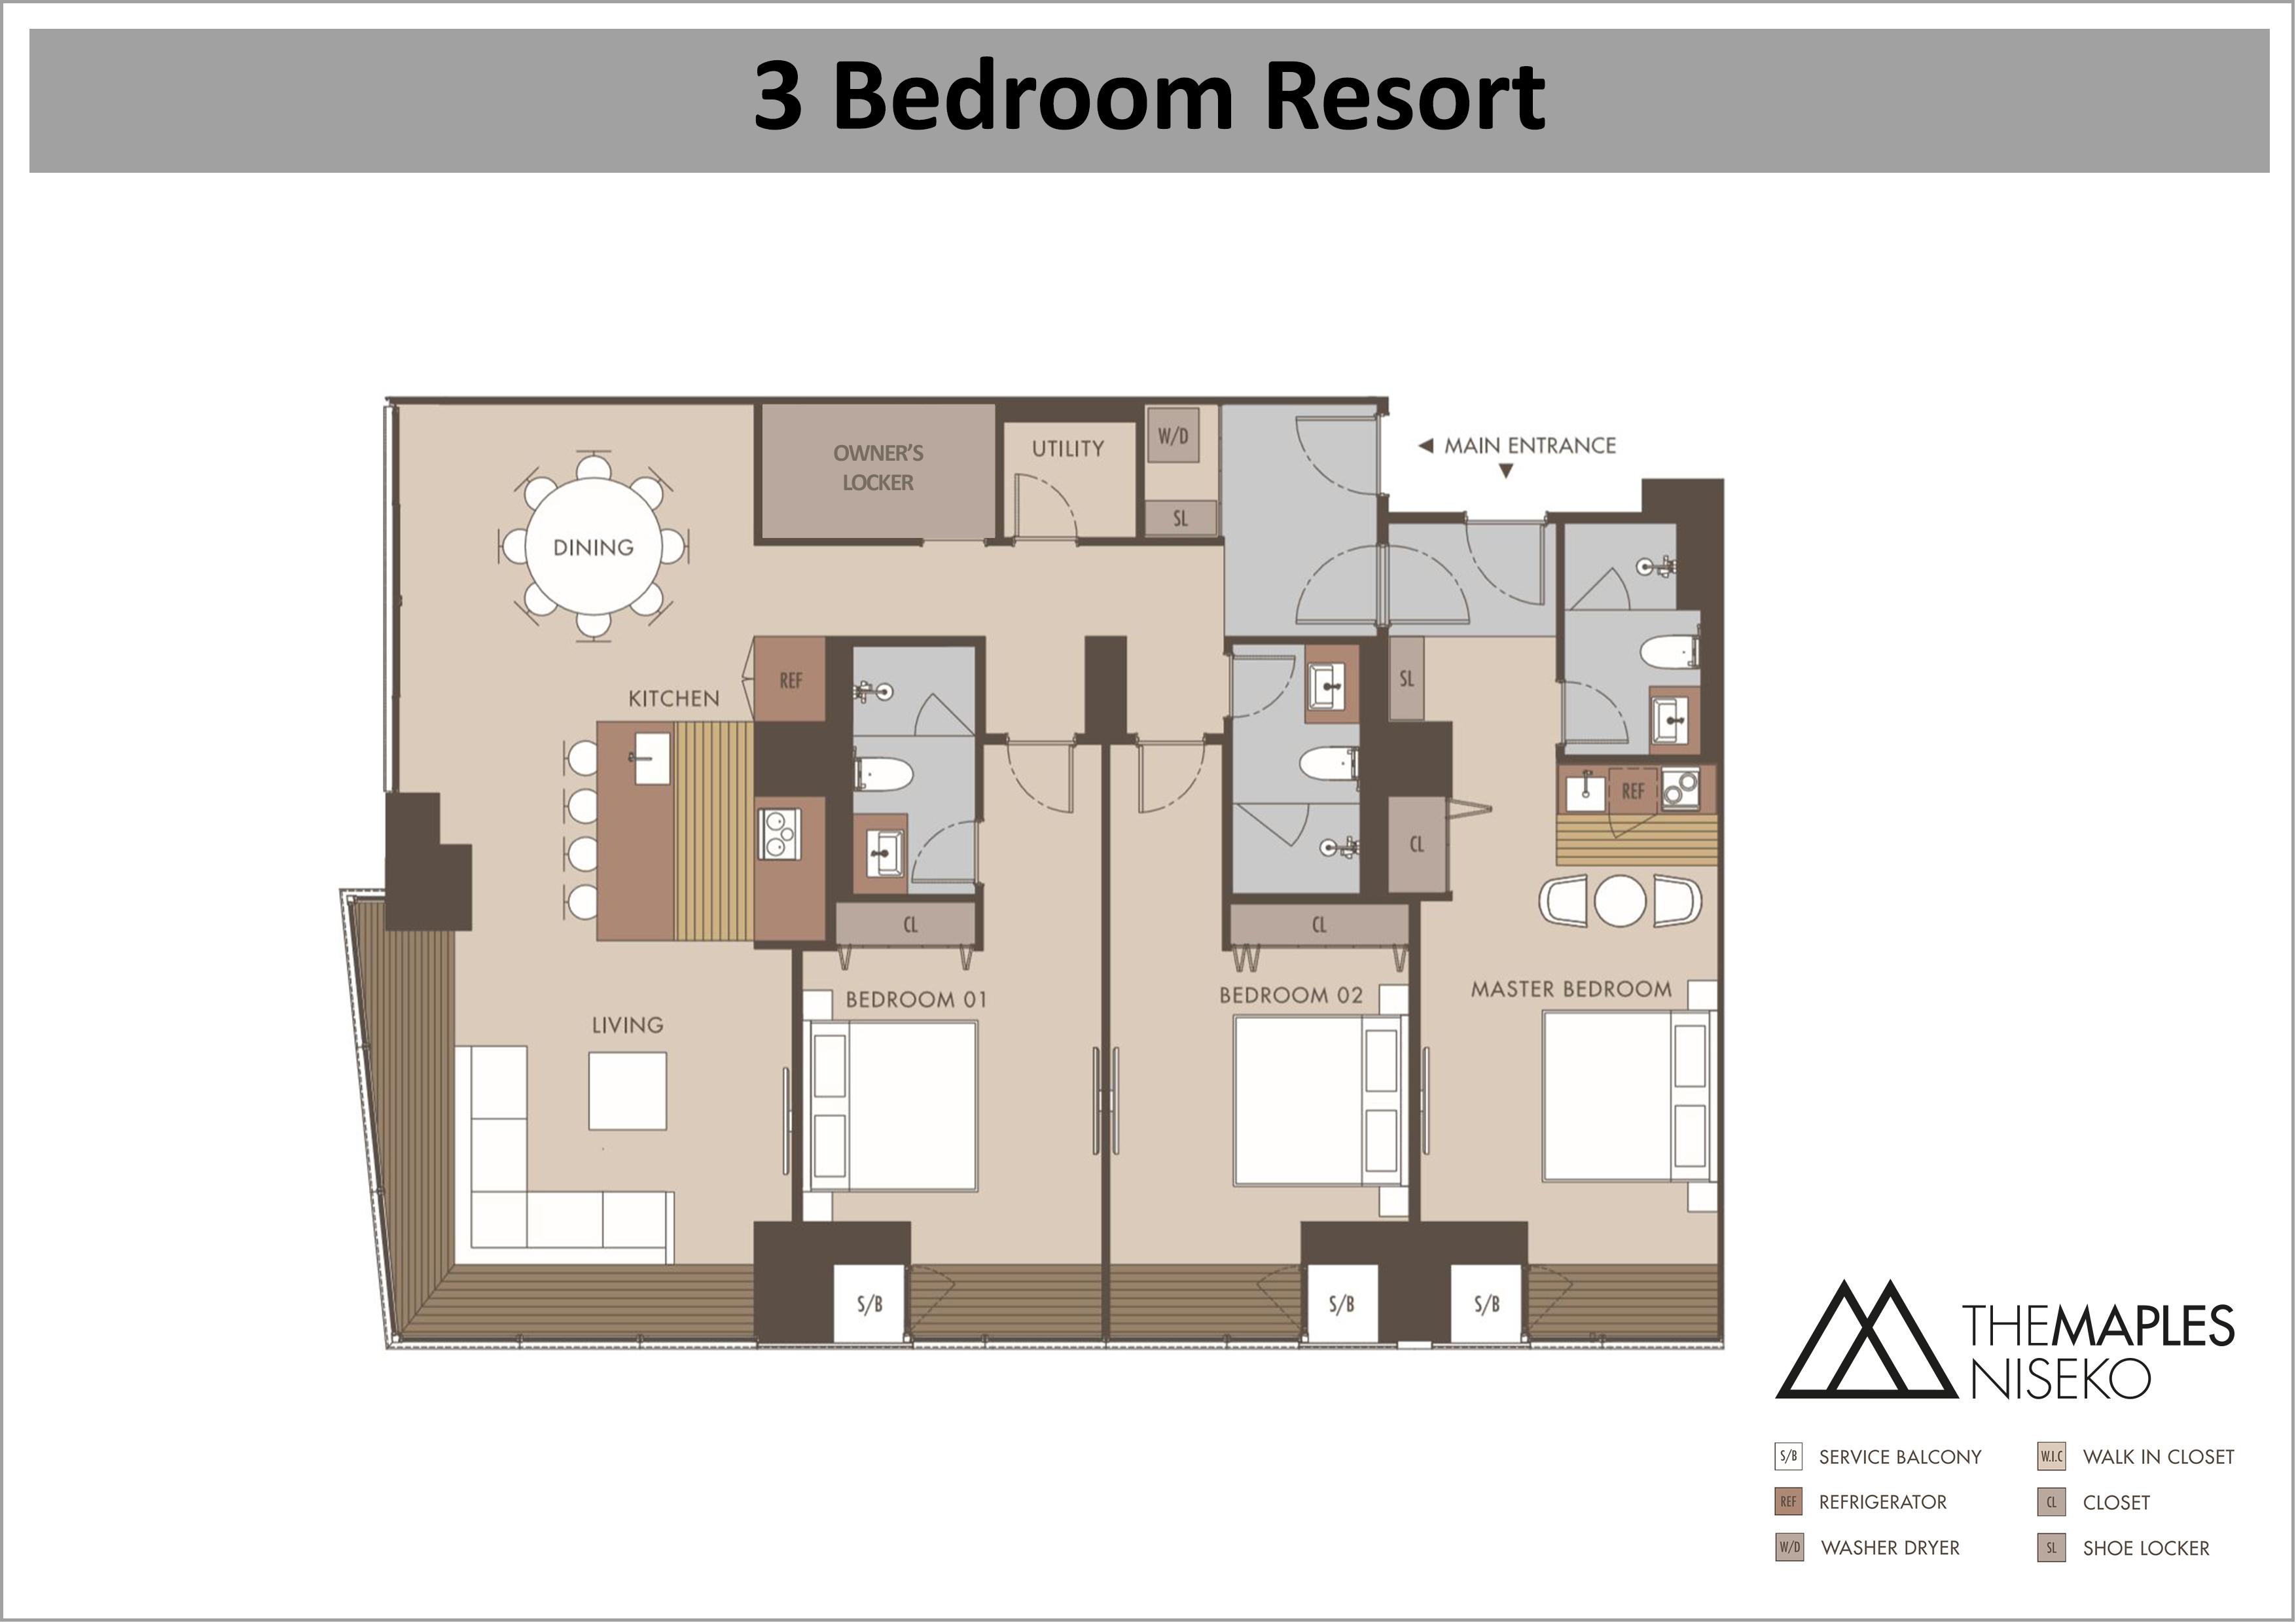 The Maples - 3 Bedroom Resort floor plan